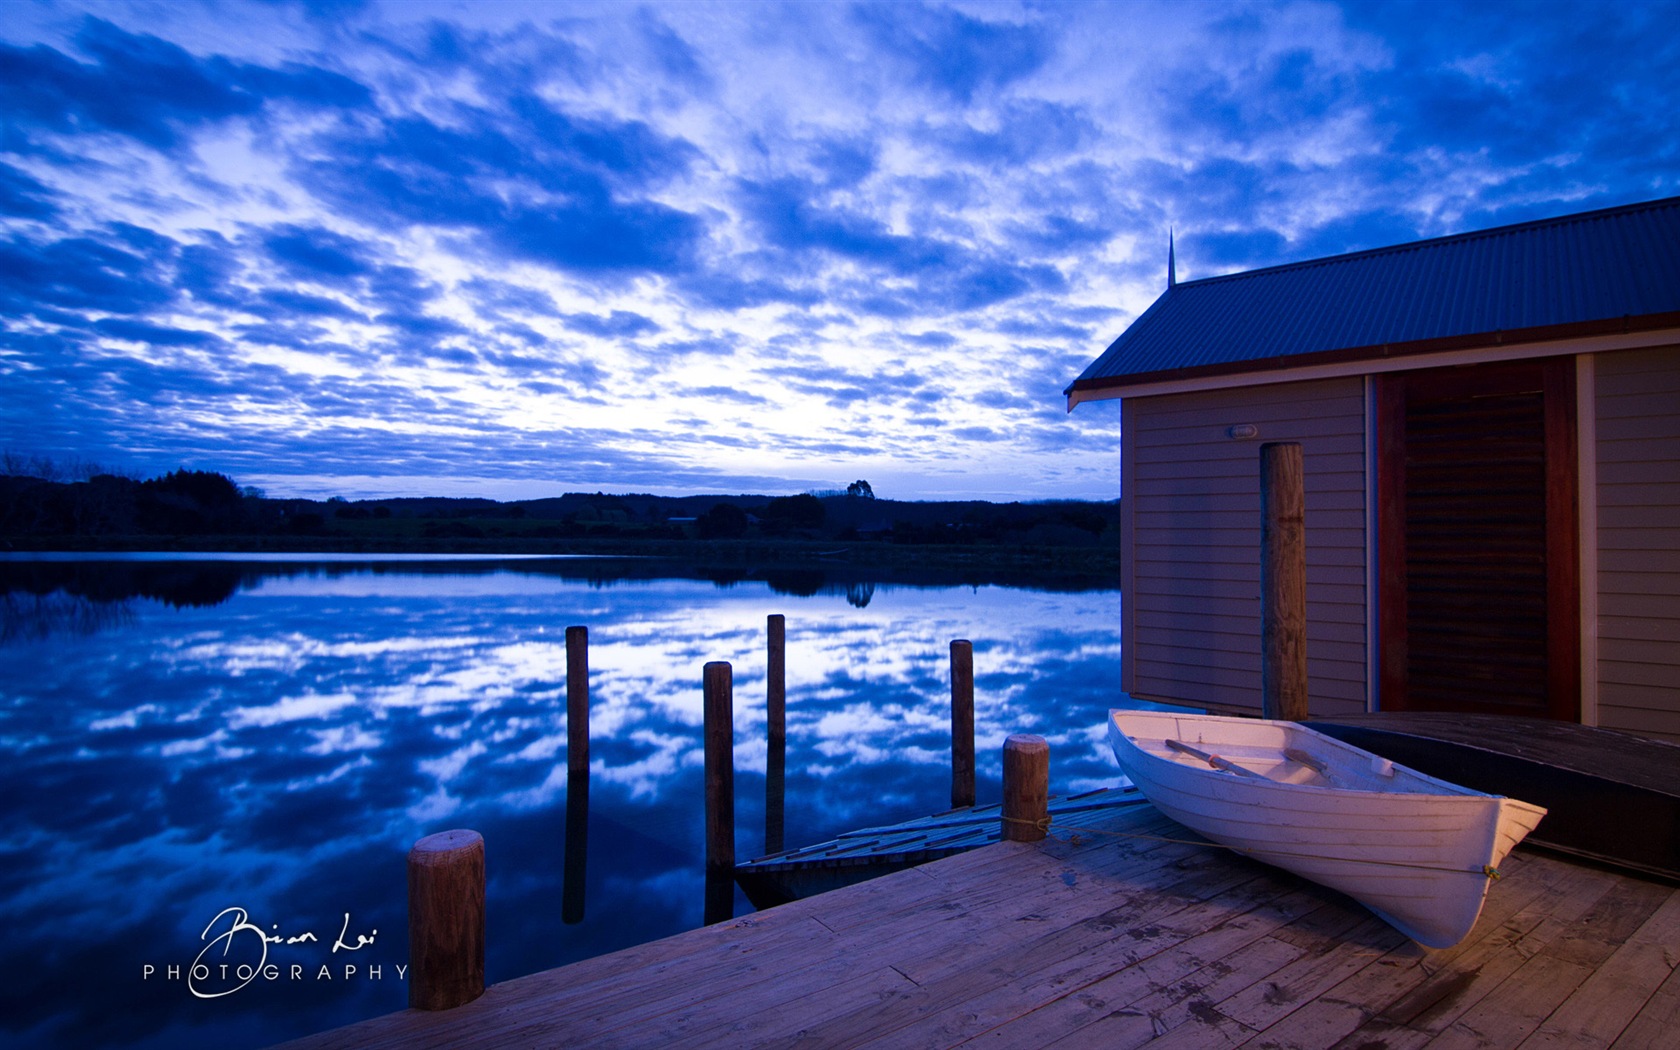 Nouvelle-Zélande Île du Nord de beaux paysages, Windows 8 fonds d'écran thématiques #1 - 1680x1050